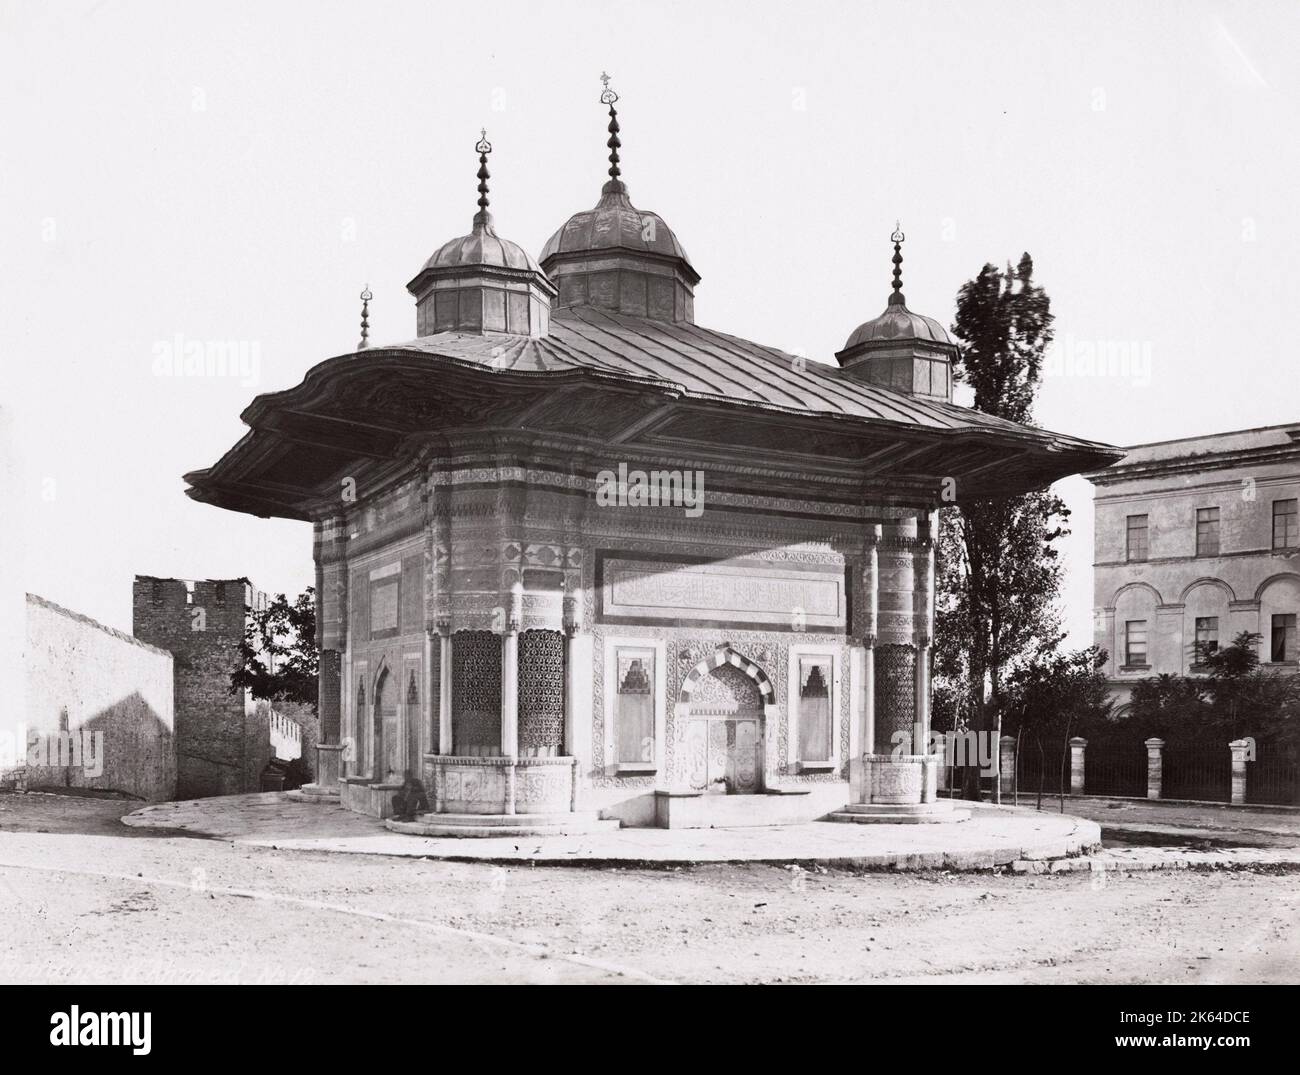 Photo de la fin du XIXe siècle : la fontaine du Sultan Ahmed III, Constantinople, Istanbul, Turquie Banque D'Images